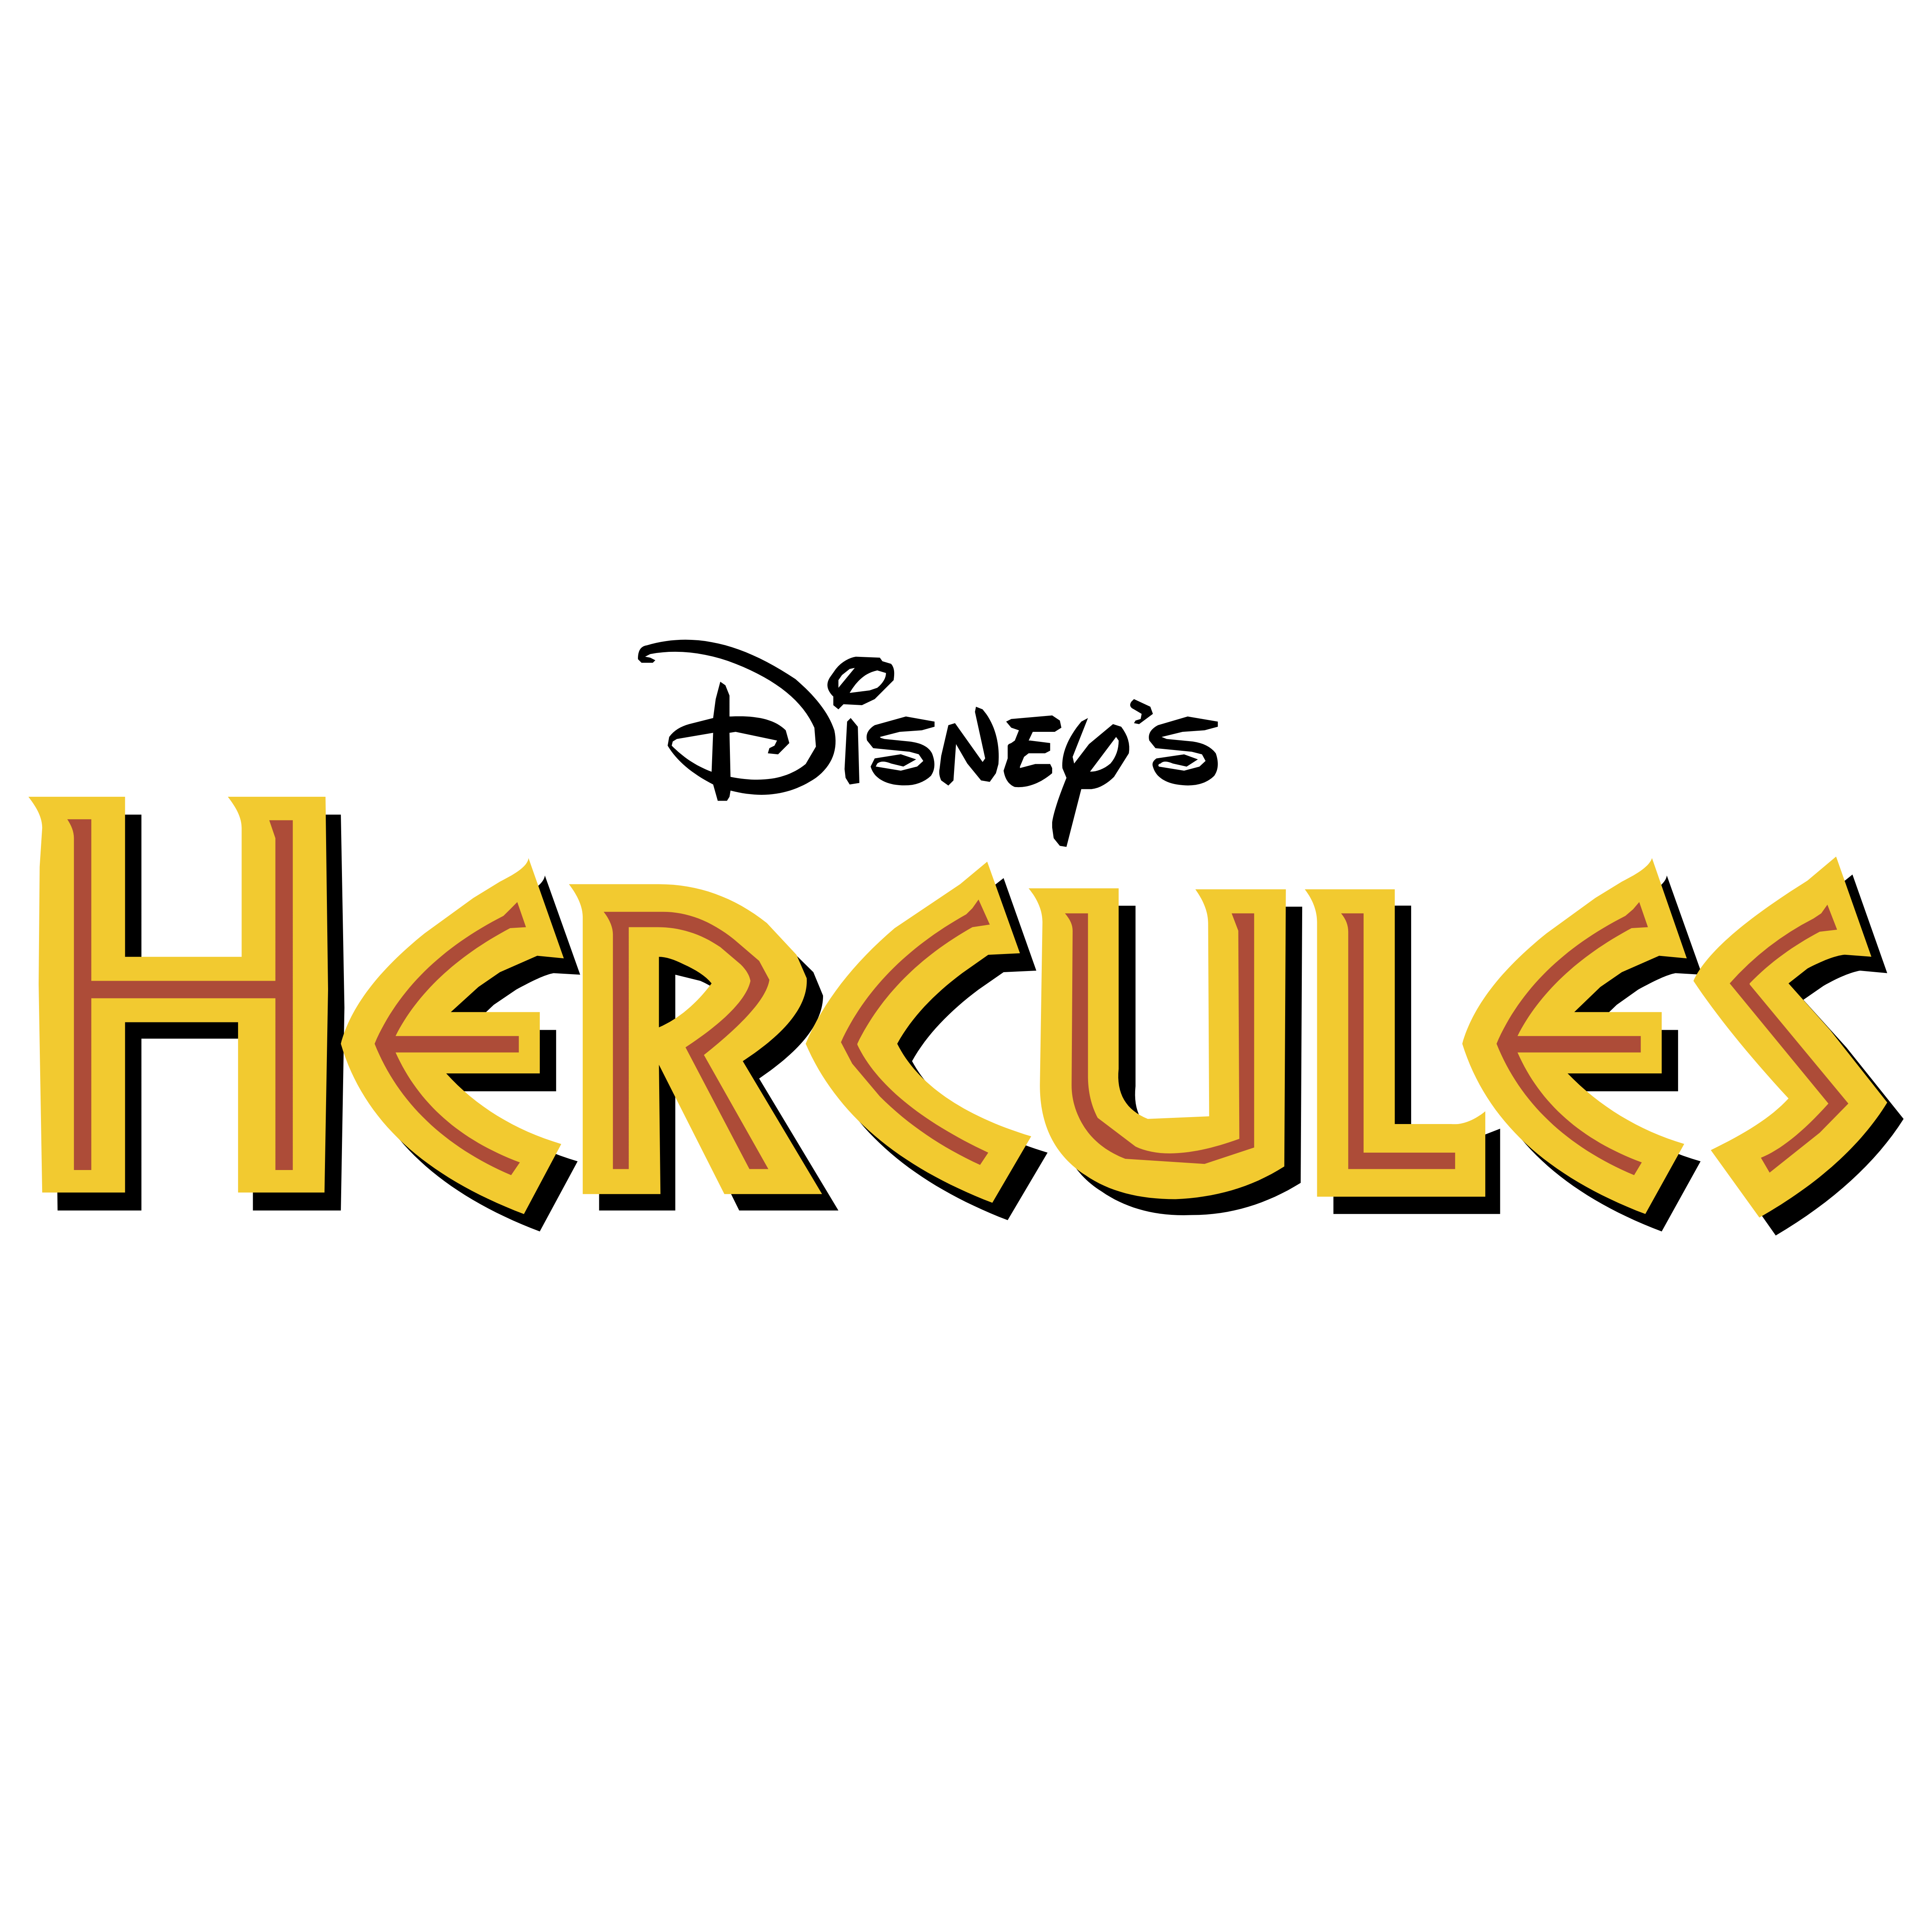 Hercules Logo - Hercules – Logos Download